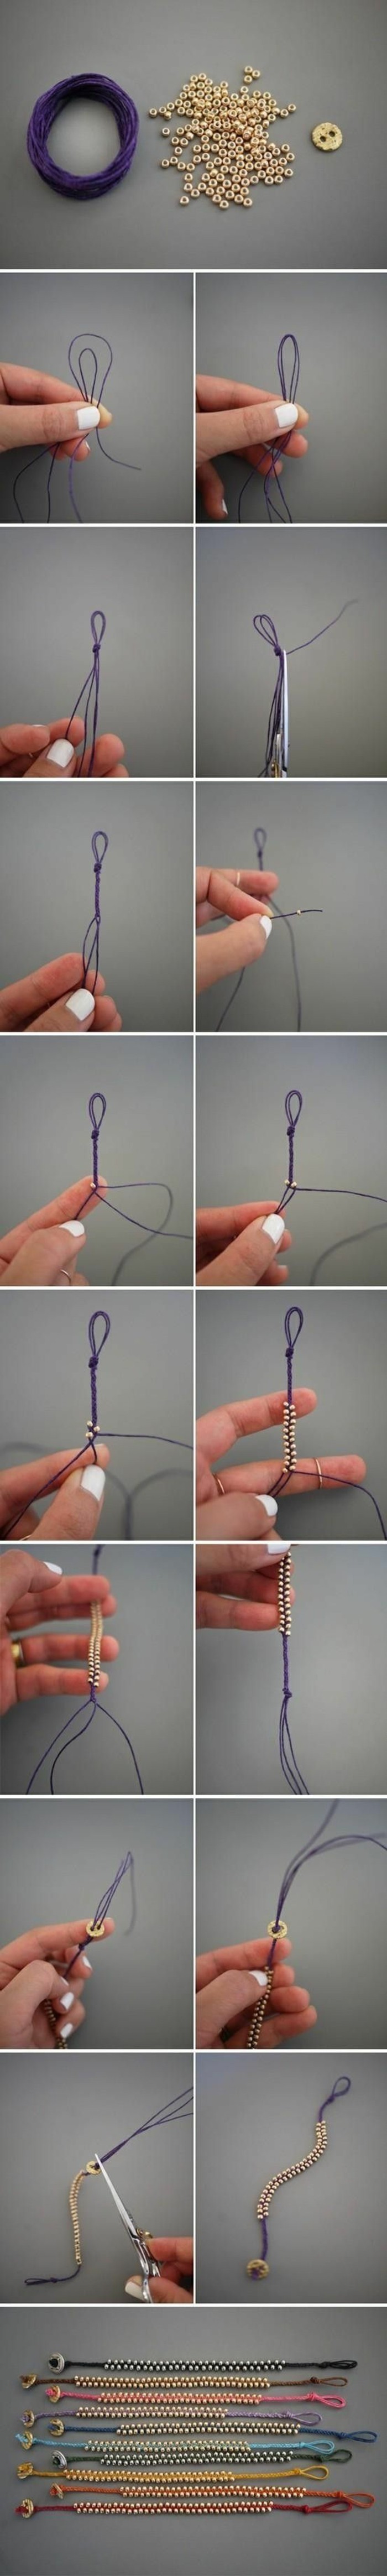 Come fare un braccialetto, tutorial per braccialetto, fili e rondelle di legno